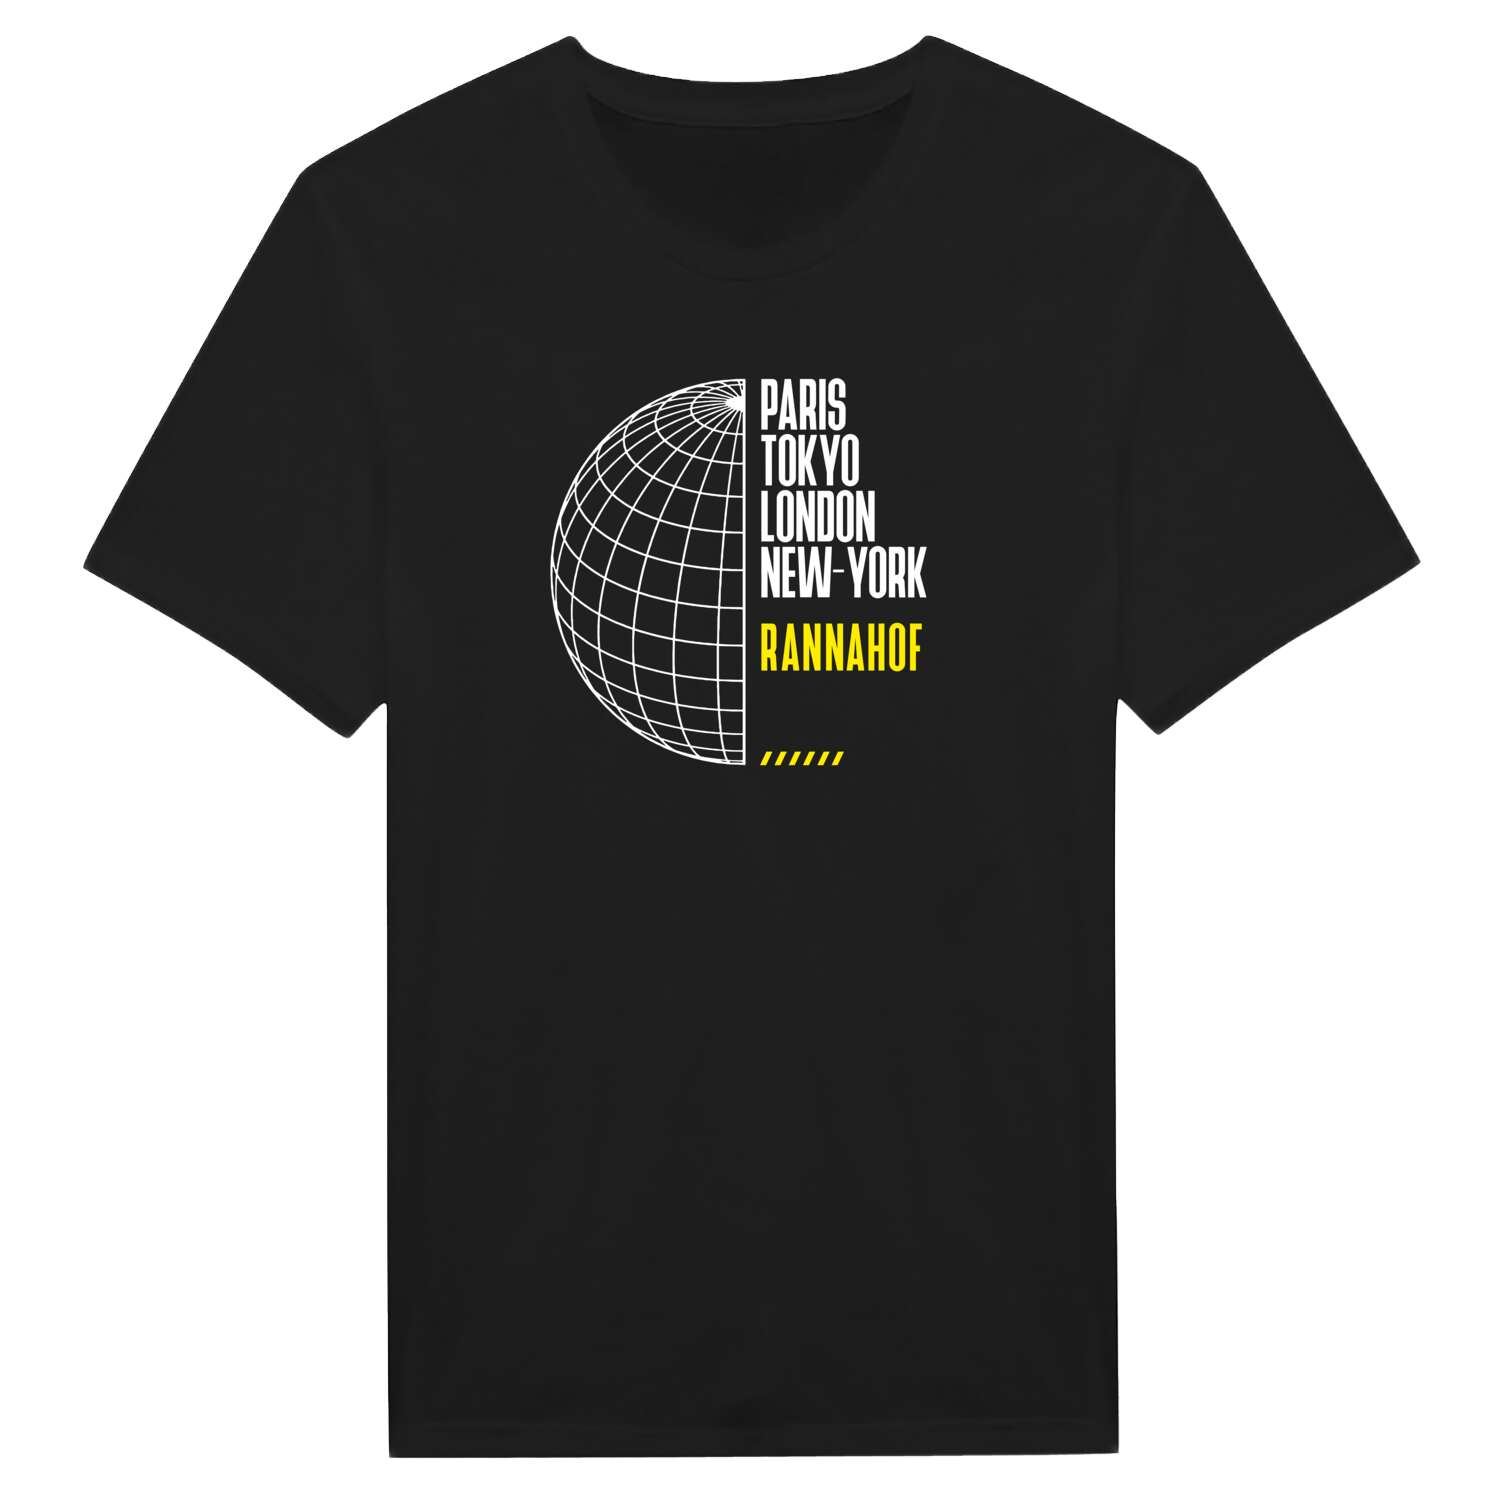 Rannahof T-Shirt »Paris Tokyo London«